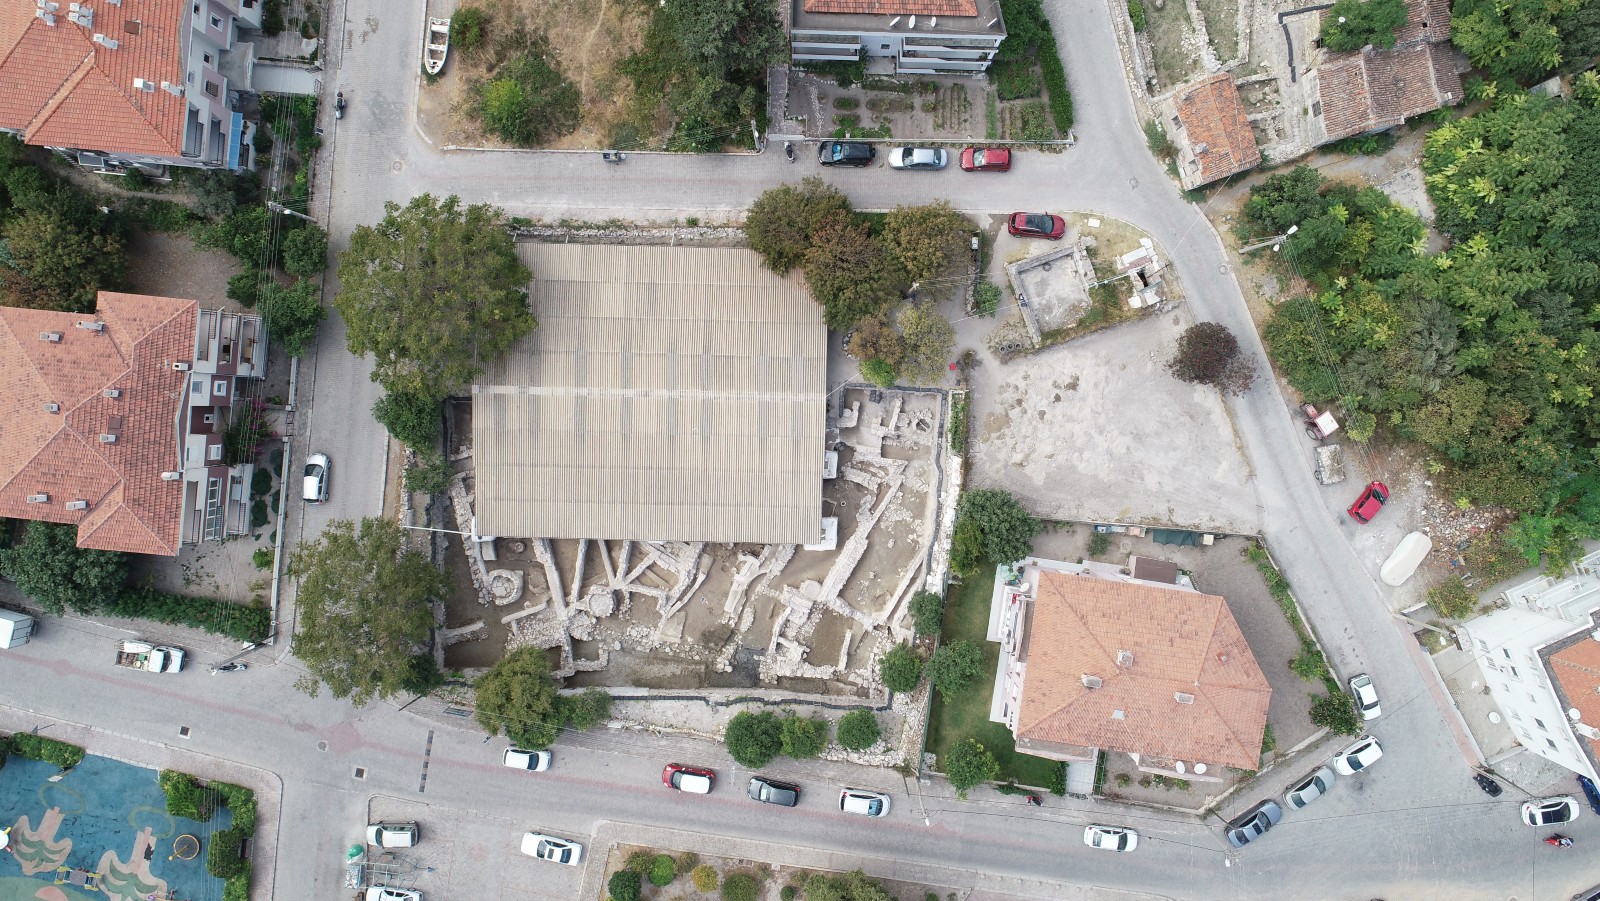 Birds-eye view of the excavation site within a modern neighborhood of Çeşme-Bağlararası, Turkey. Photo by Vasıf Şahoğlu